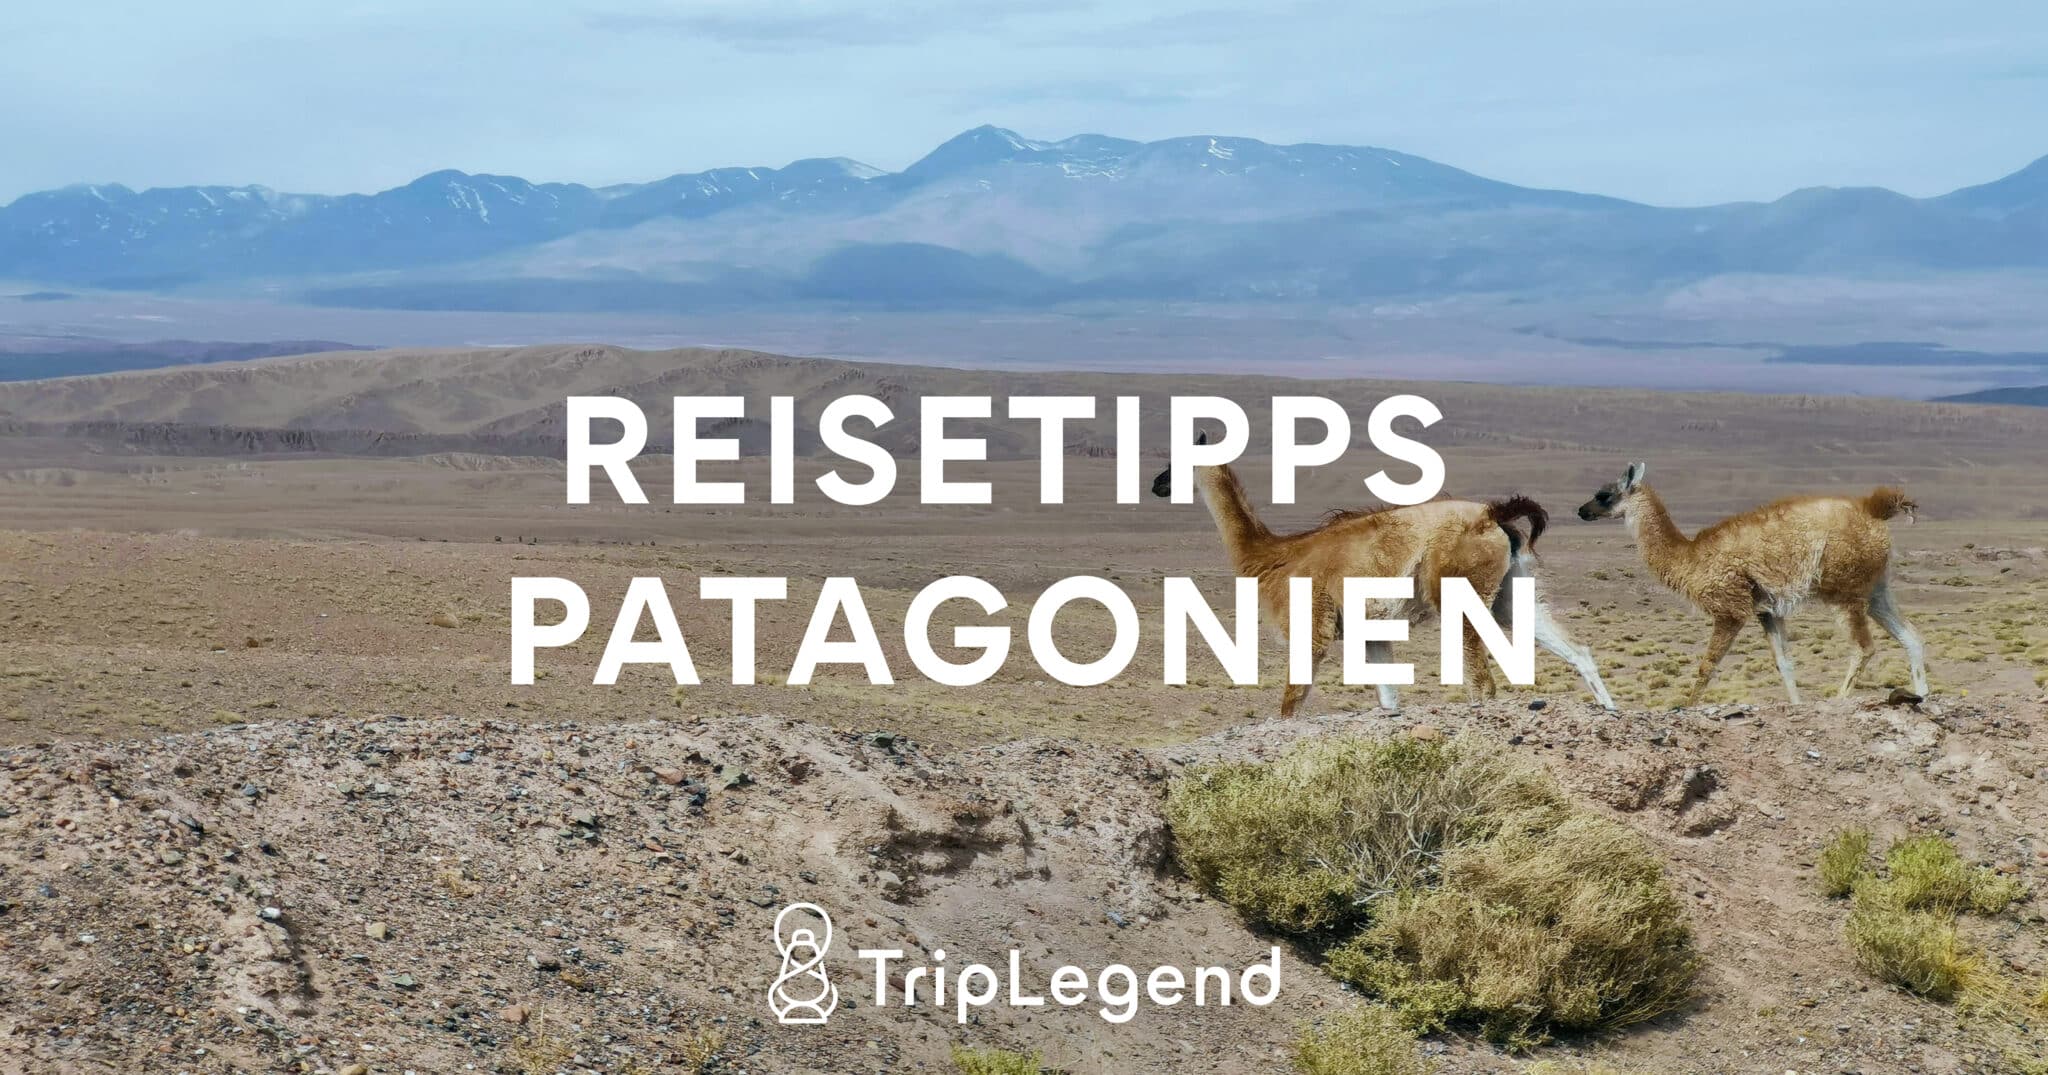 Bidragende billede til artiklen Rejsetips Patagonien